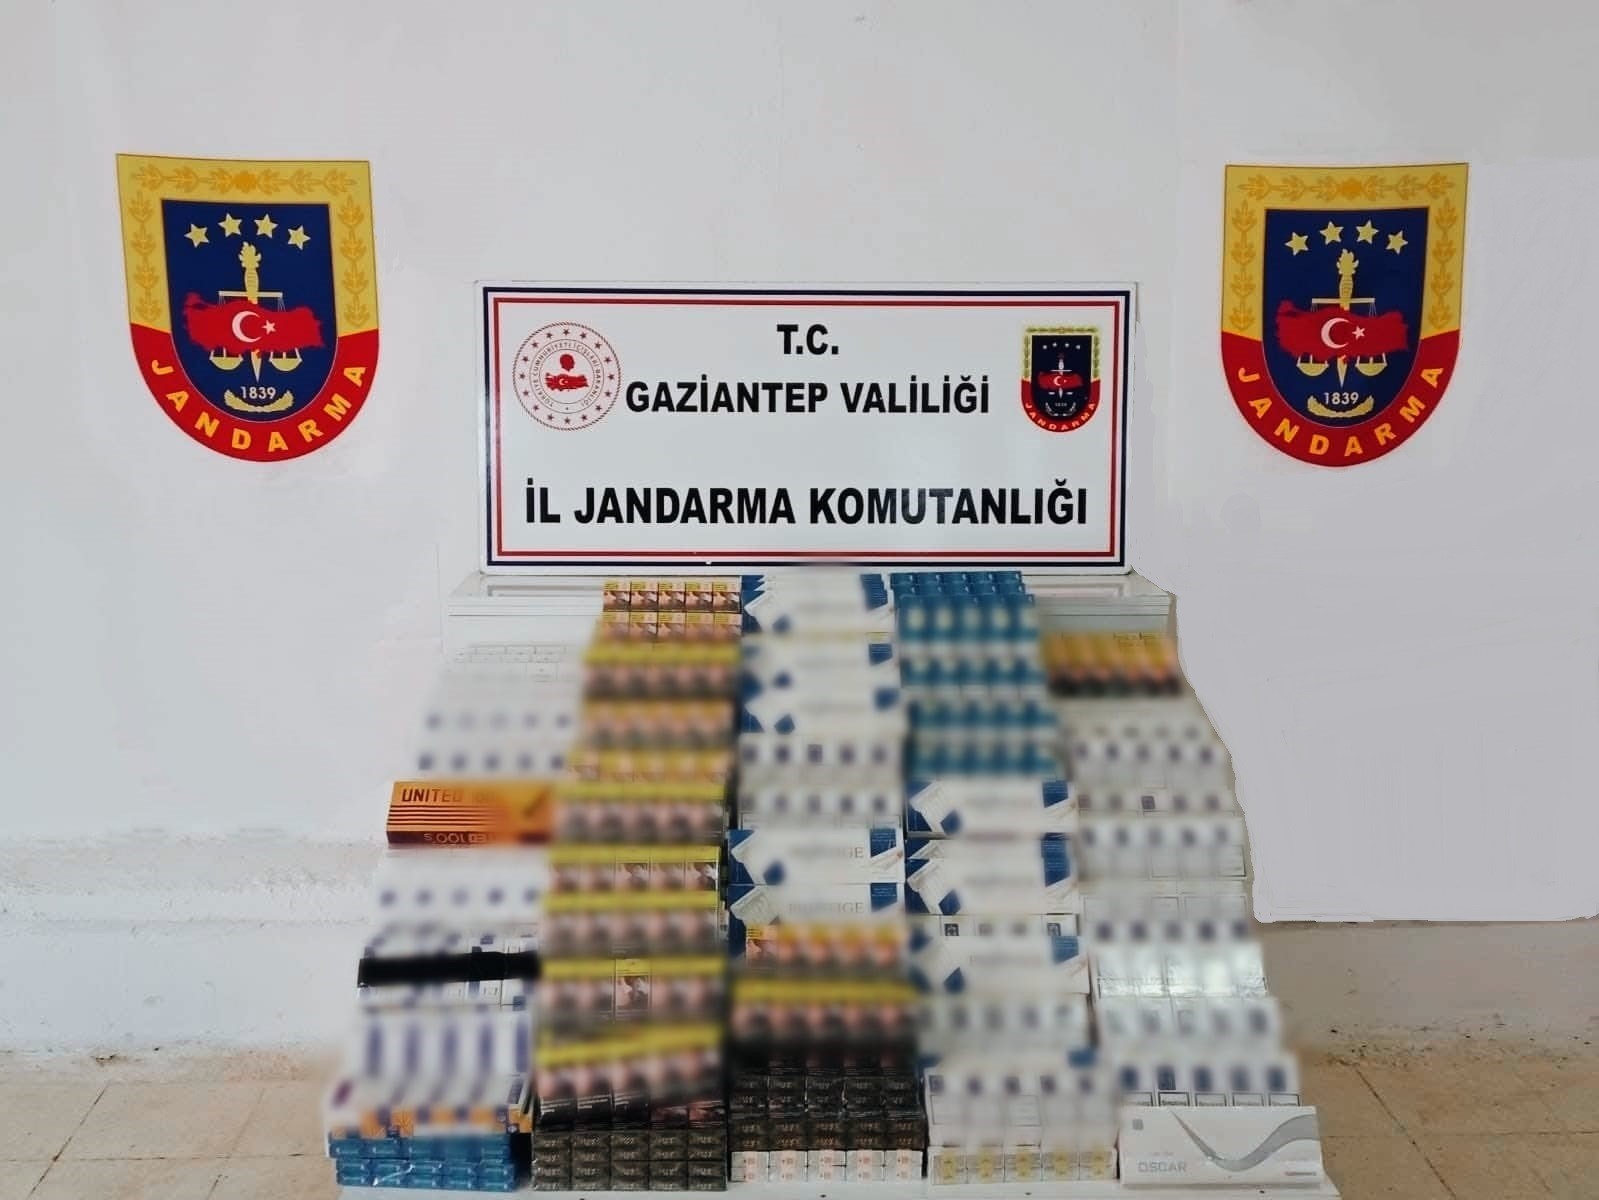 Gaziantep’te 1 milyon 317 bin liralık kaçak malzeme ele geçirildi: 6 gözaltı
